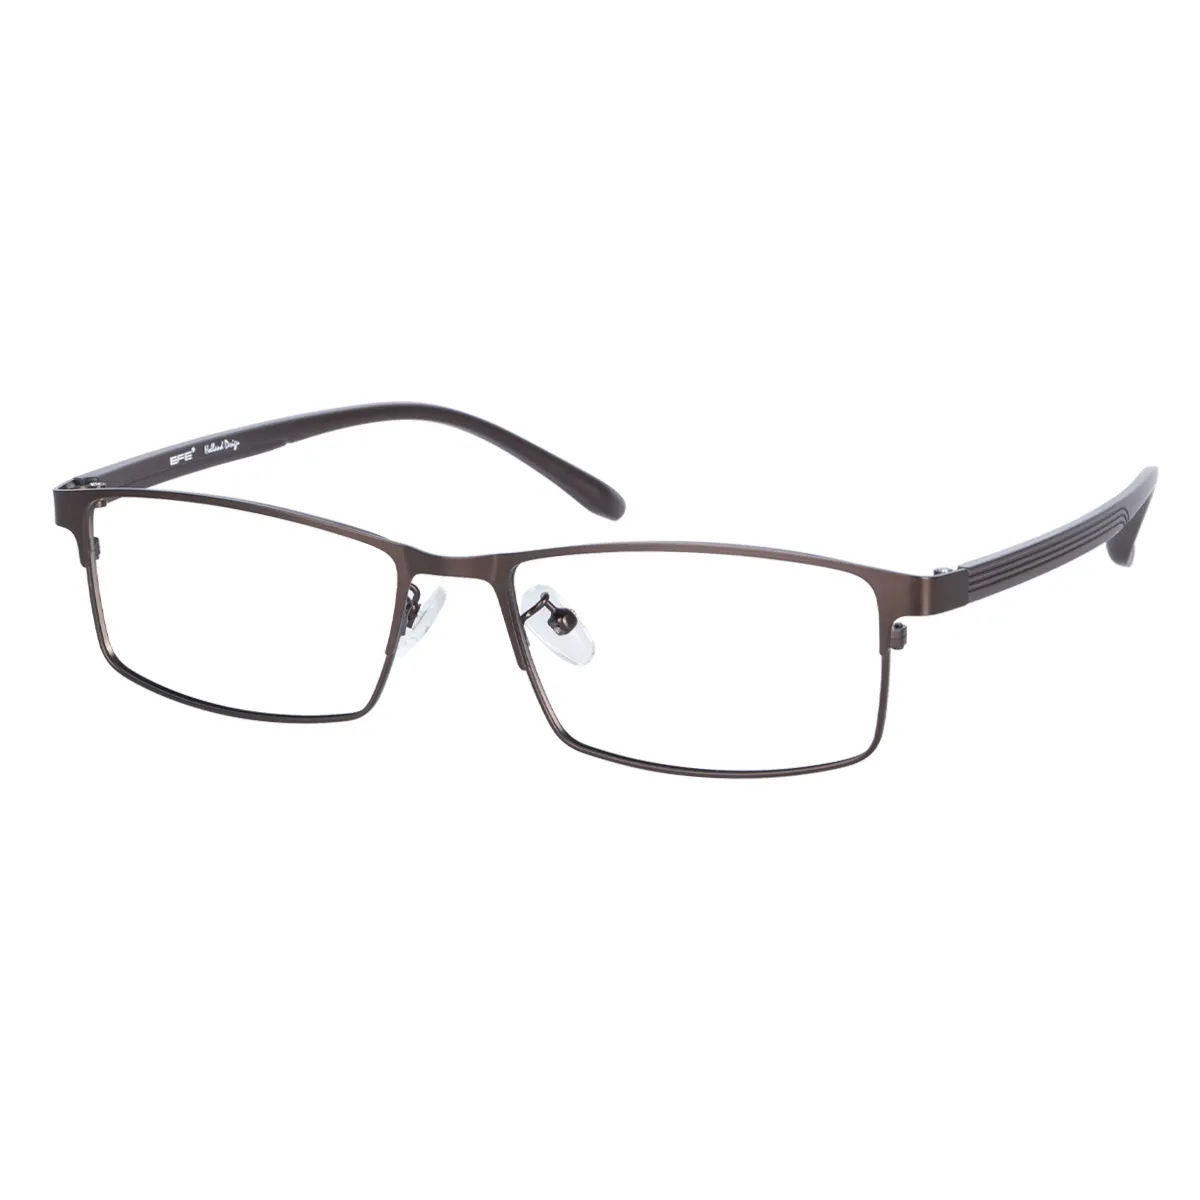 Matt - Rectangle Brown Glasses for Men